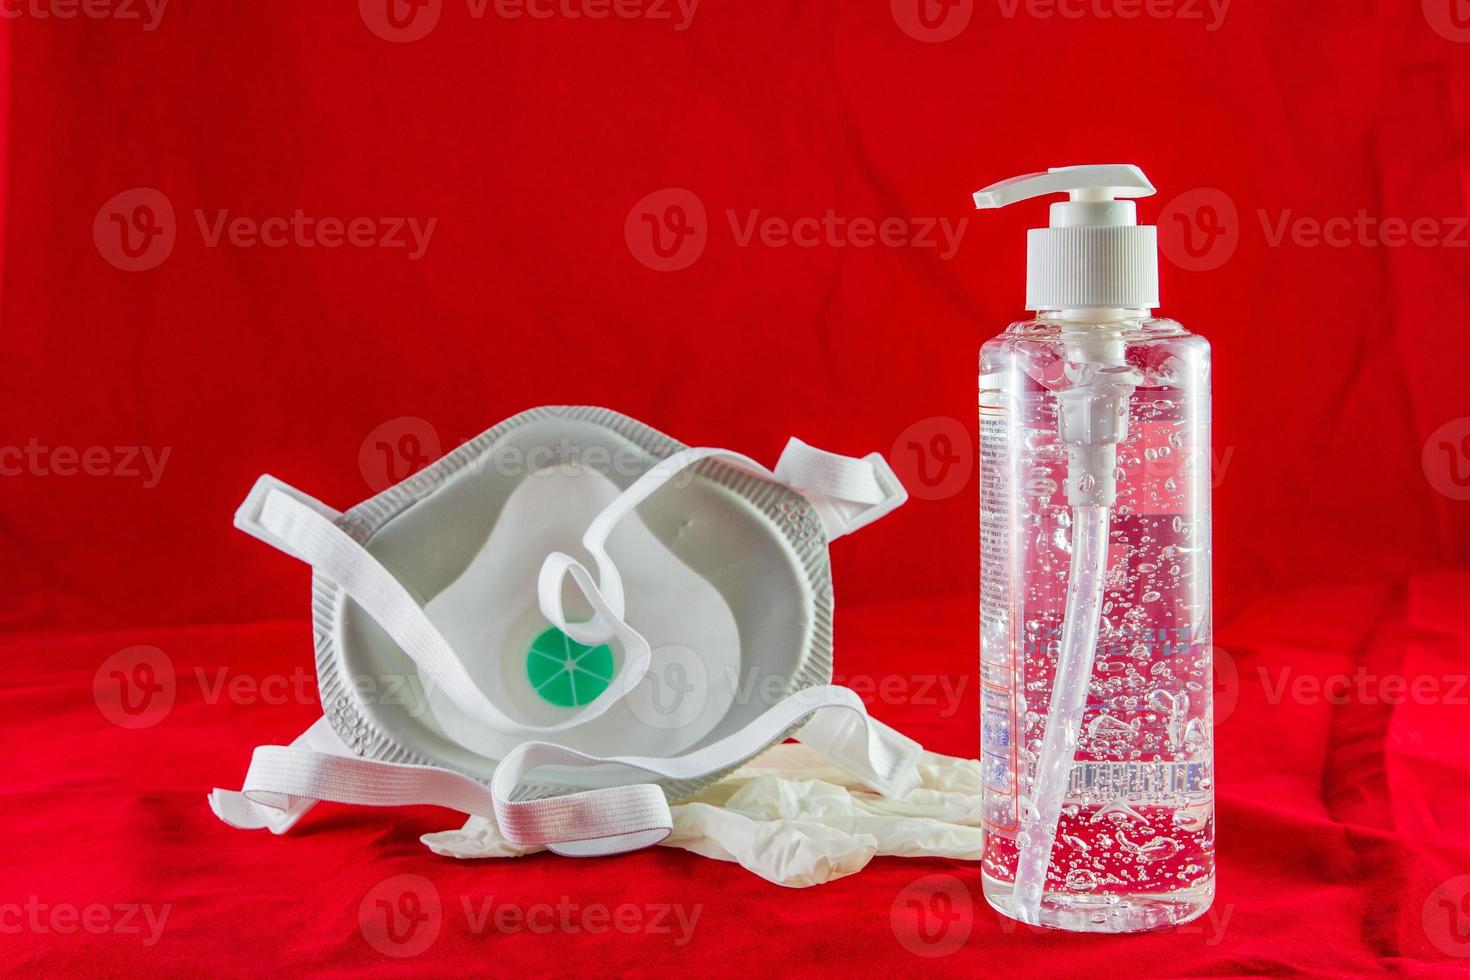 Desinfektionsgel weiße Latexhandschuhe und Maske auf rotem Schutzkonzept gegen Verschmutzungsvirusgrippe und Coronavirus foto